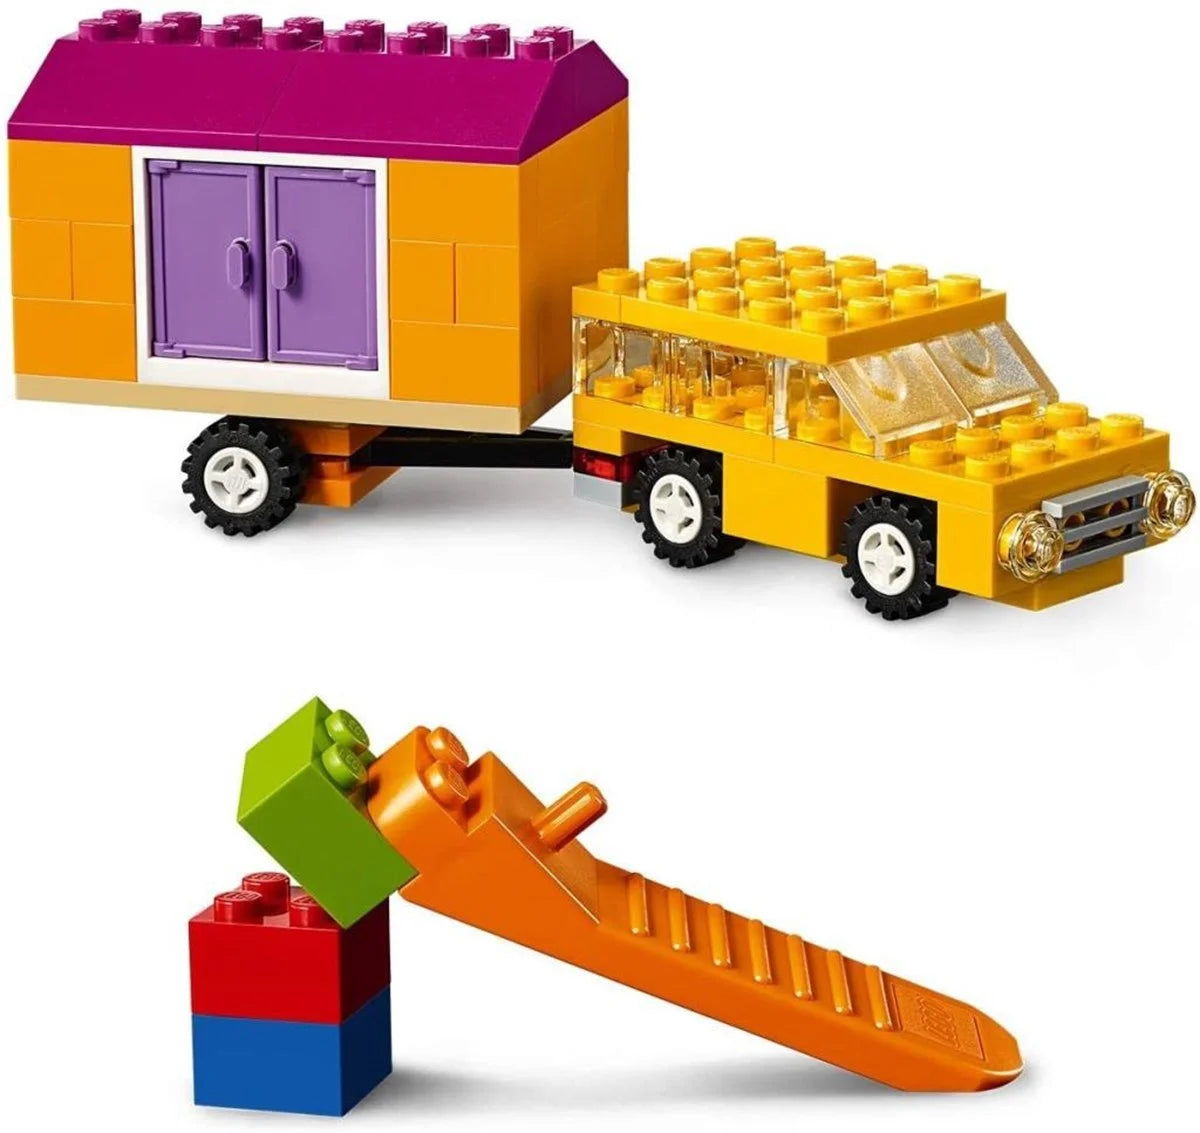 Lego Classic Tekerlekli Yapım Parçaları 10715 | Toysall